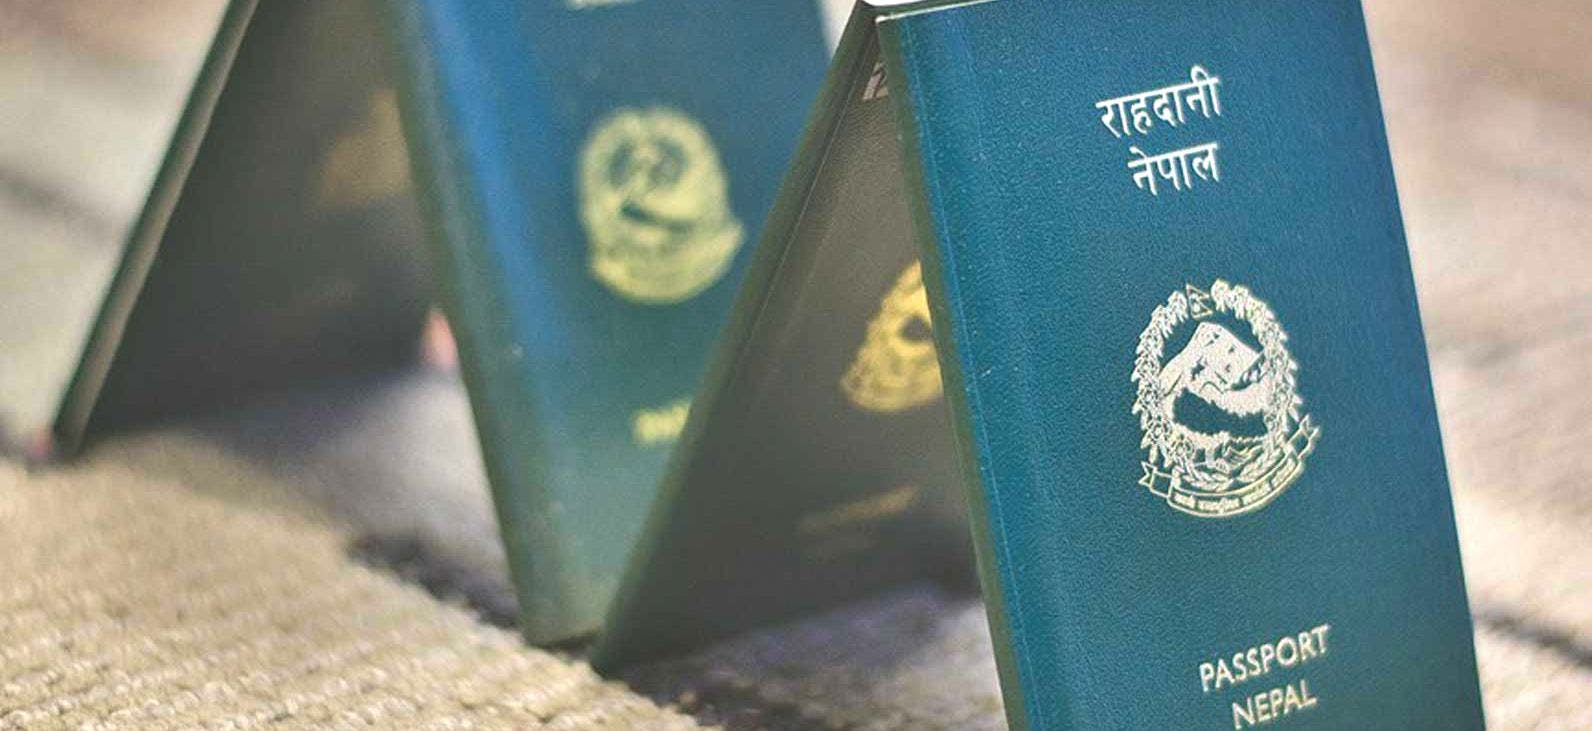 Passport and Visa in Nepal